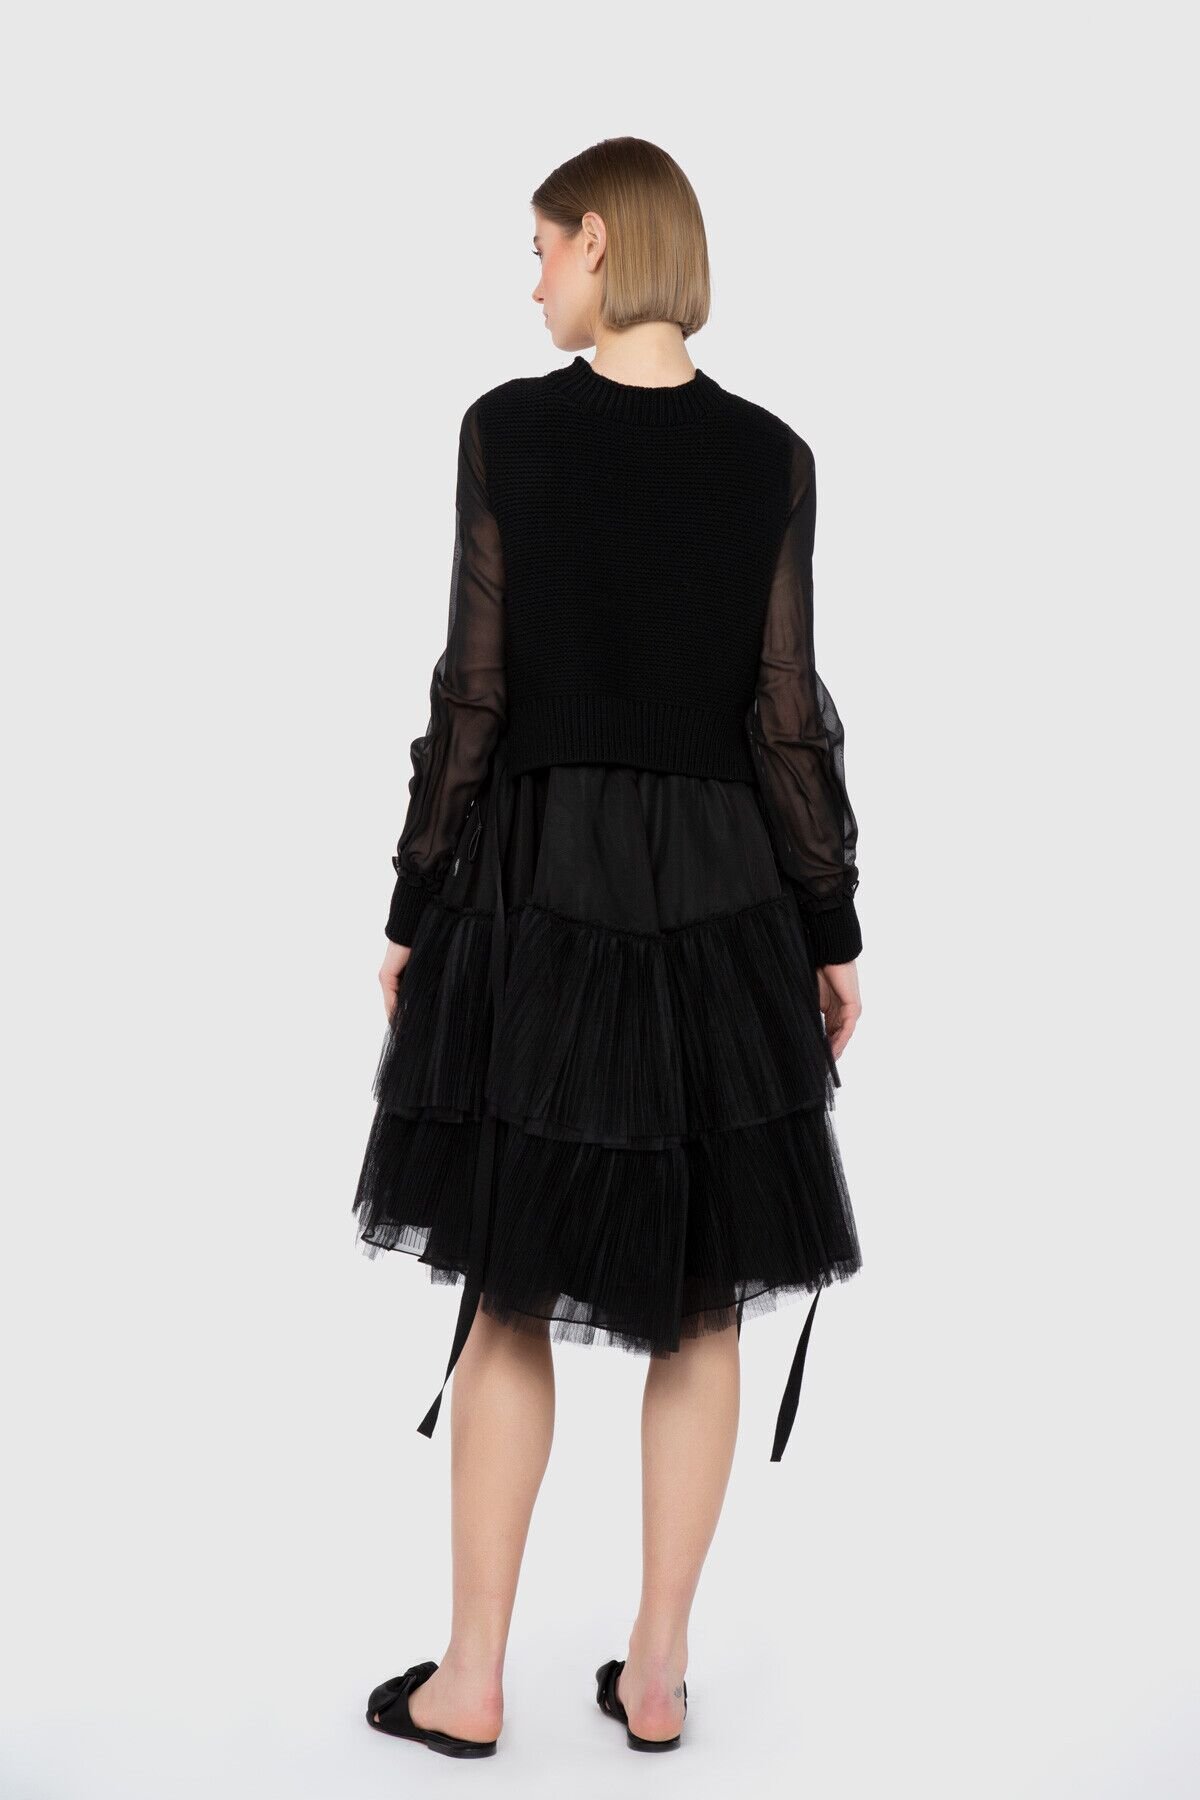 Dice Kayek Transparan Ve Katlı Etek Detaylı Siyah Tasarım Elbise